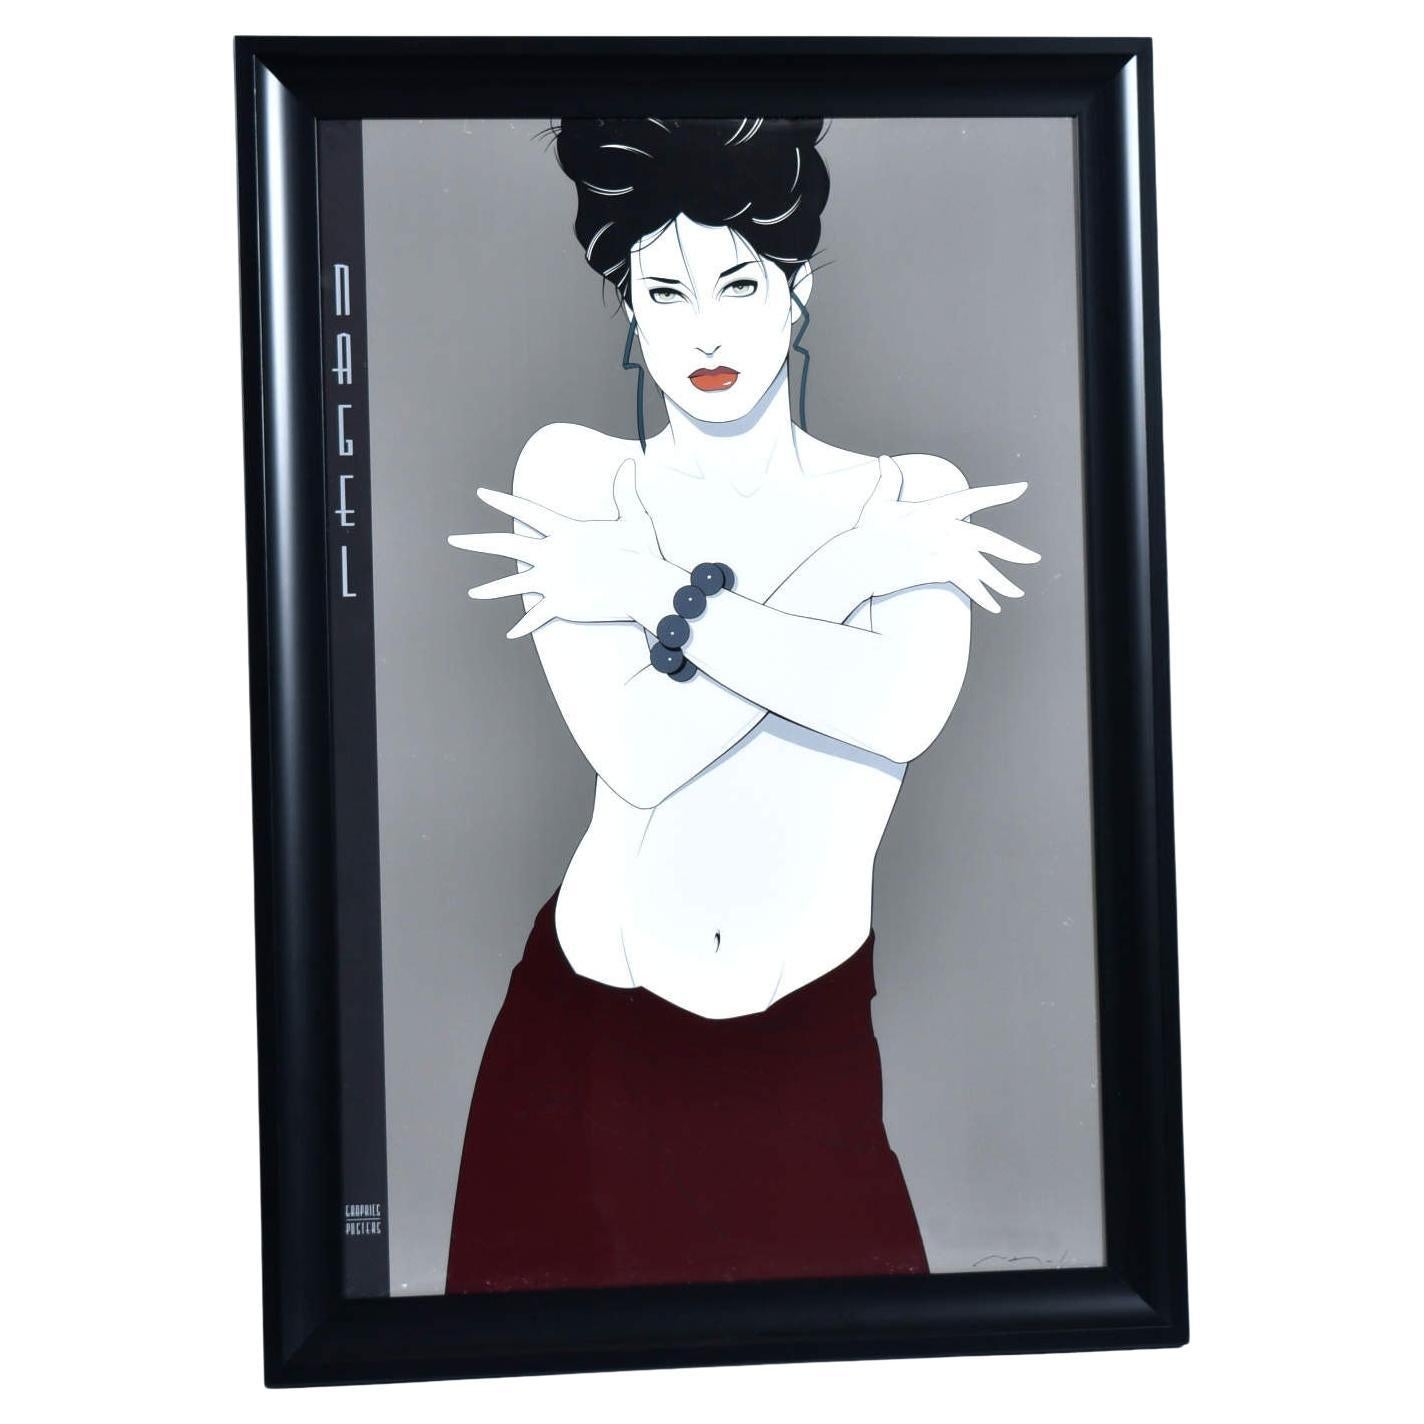 Grande affiche de Patrick Nagel, portrait féminin des années 1980 dans un cadre neuf